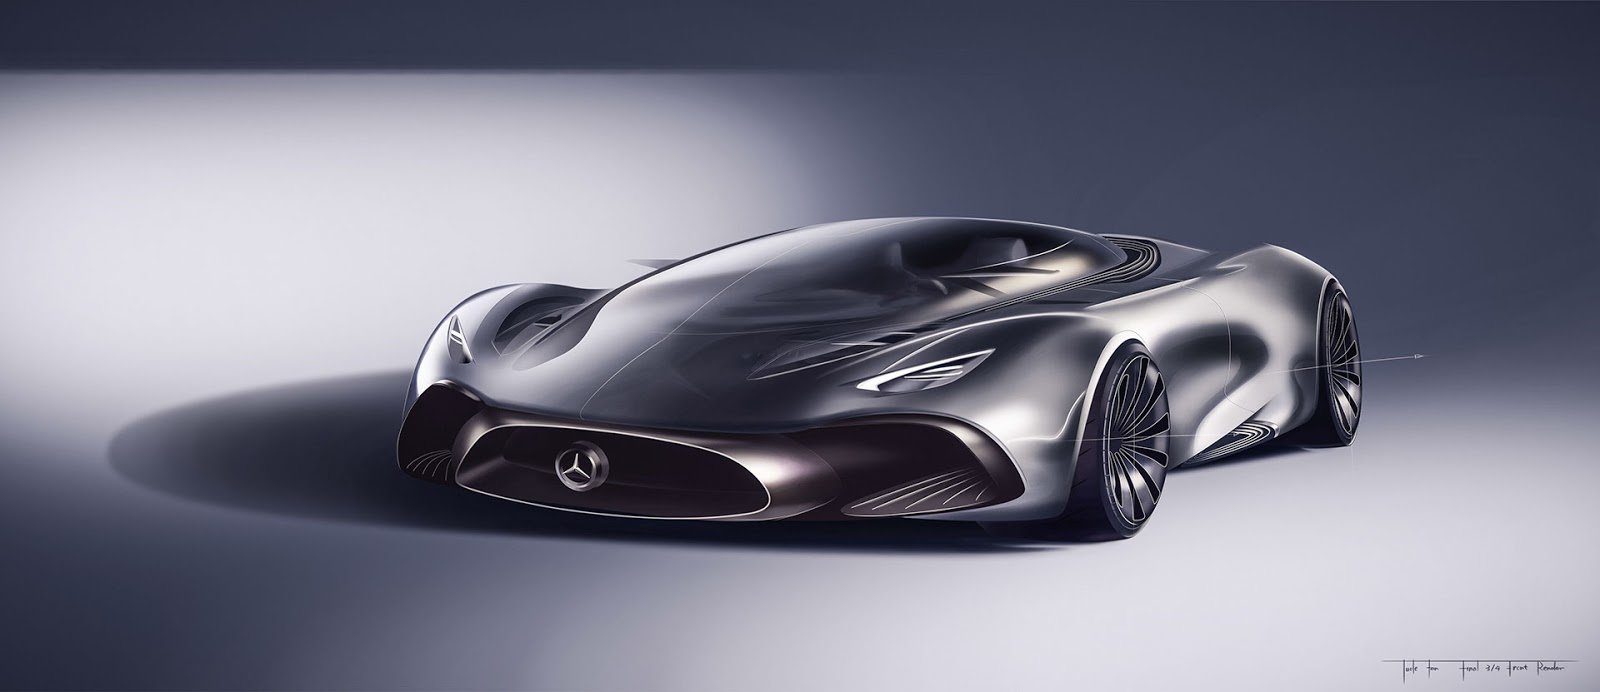 Zajímavý koncept Mercedes-AMG